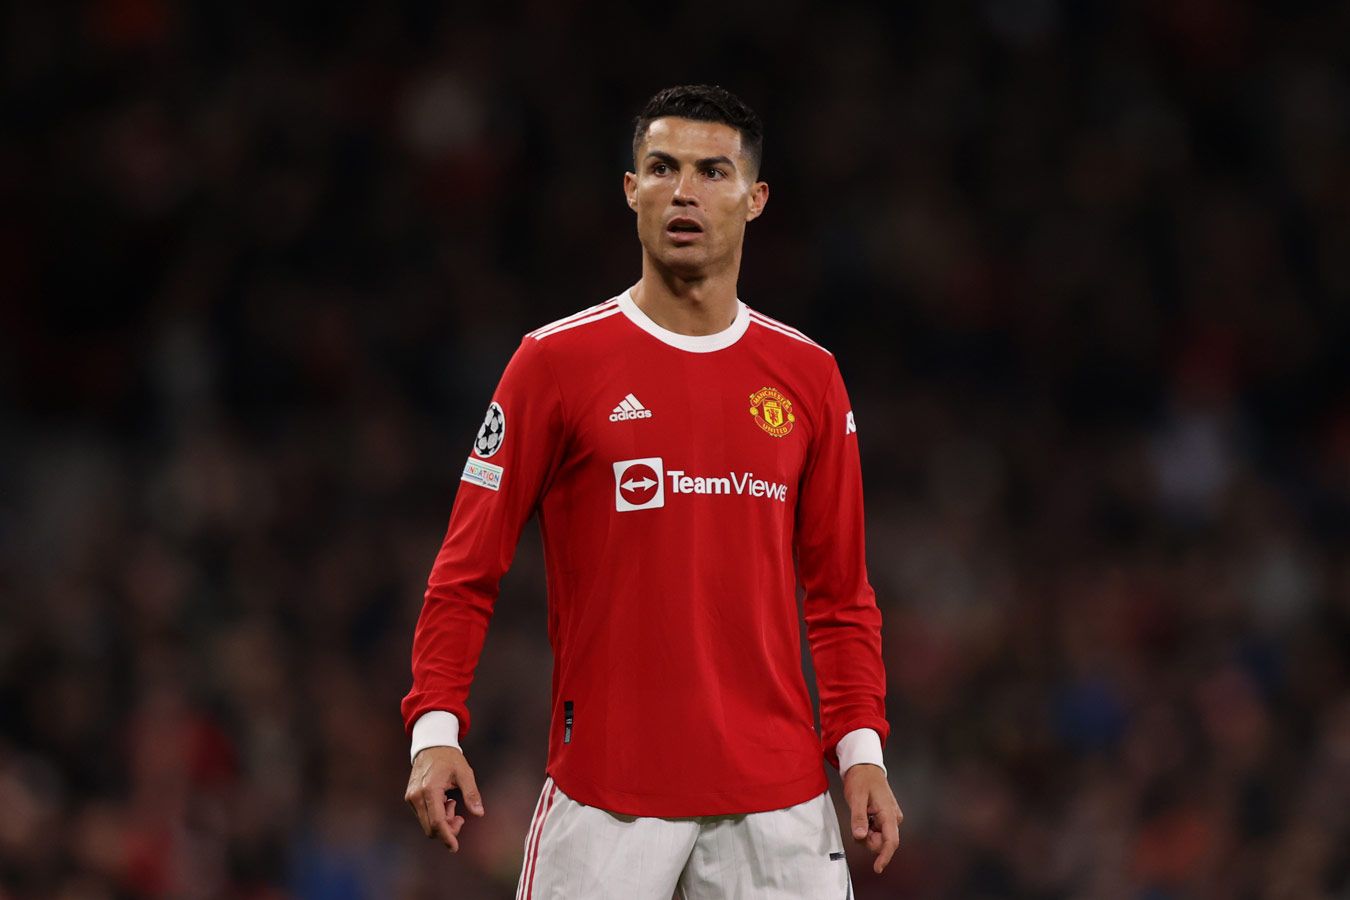 Роналду не отозвал заявку на трансфер и может покинуть «Манчестер Юнайтед» зимой